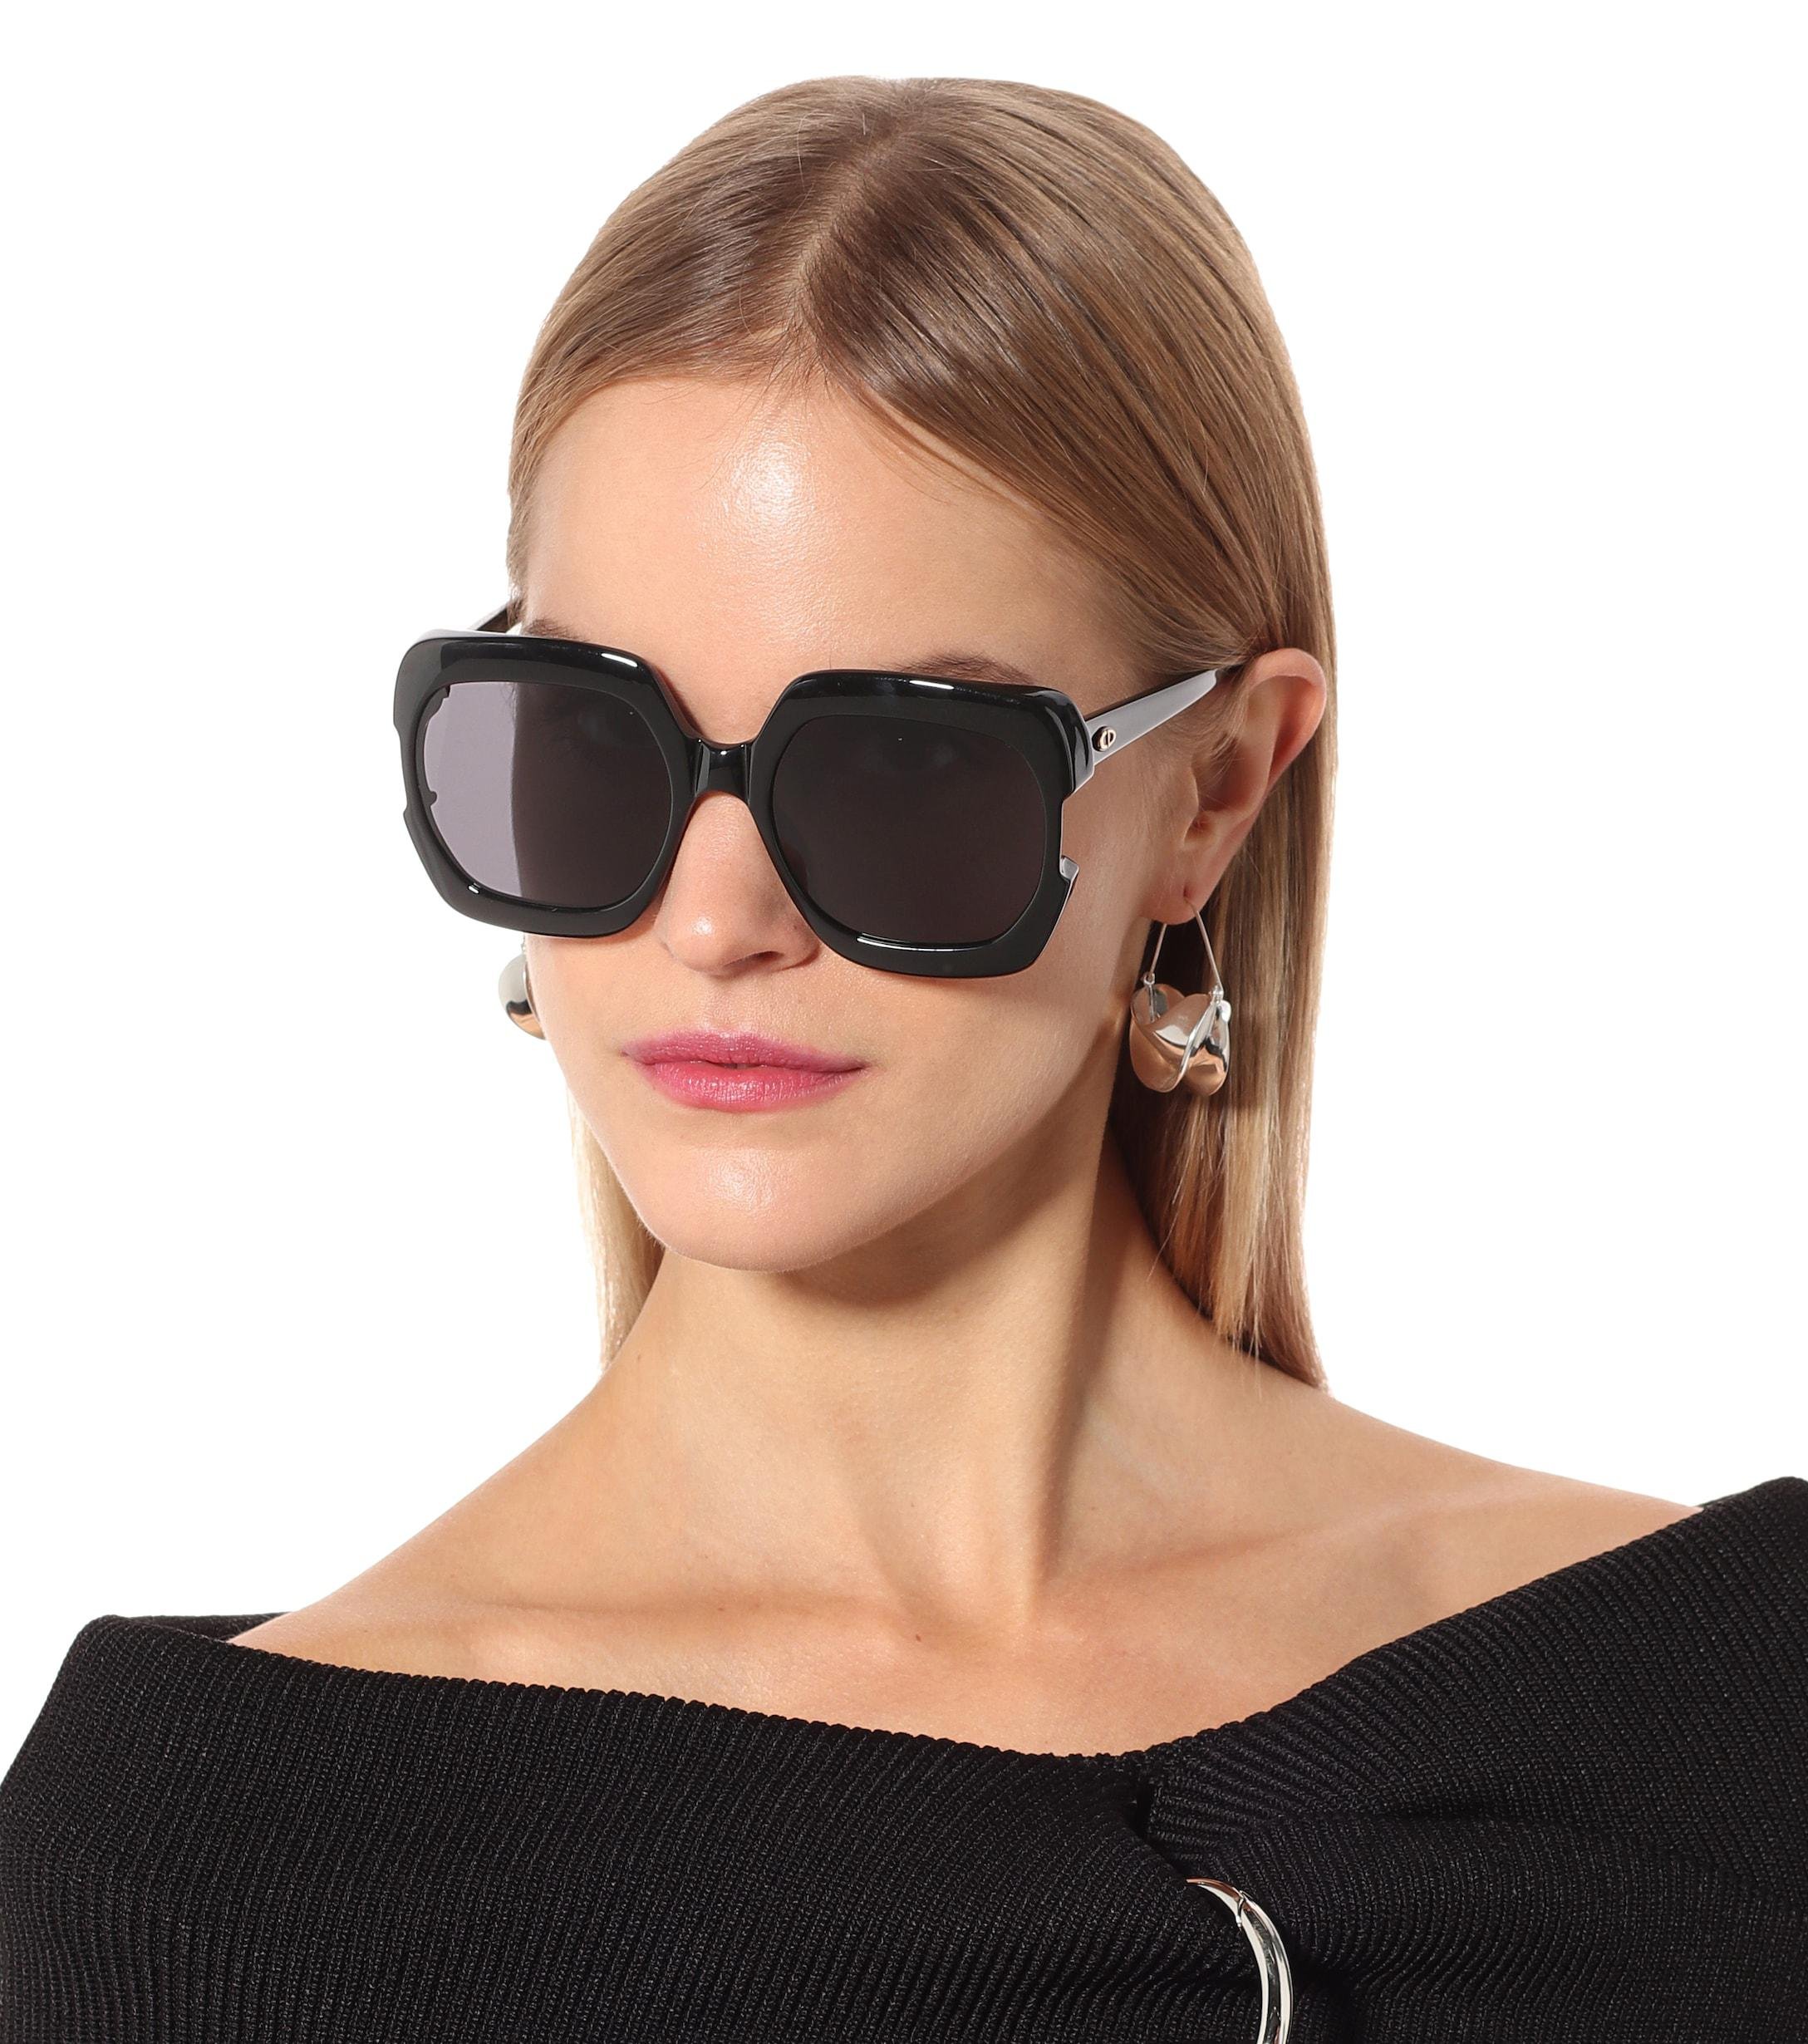 Солнцезащитные очки женские брендовые купить в москве. Очки солнцезащитные Кристиан диор. Dior Gaia очки. Очки Кристиан диор женские солнцезащитные. Очки Кристиан диор женские солнцезащитные 2021.